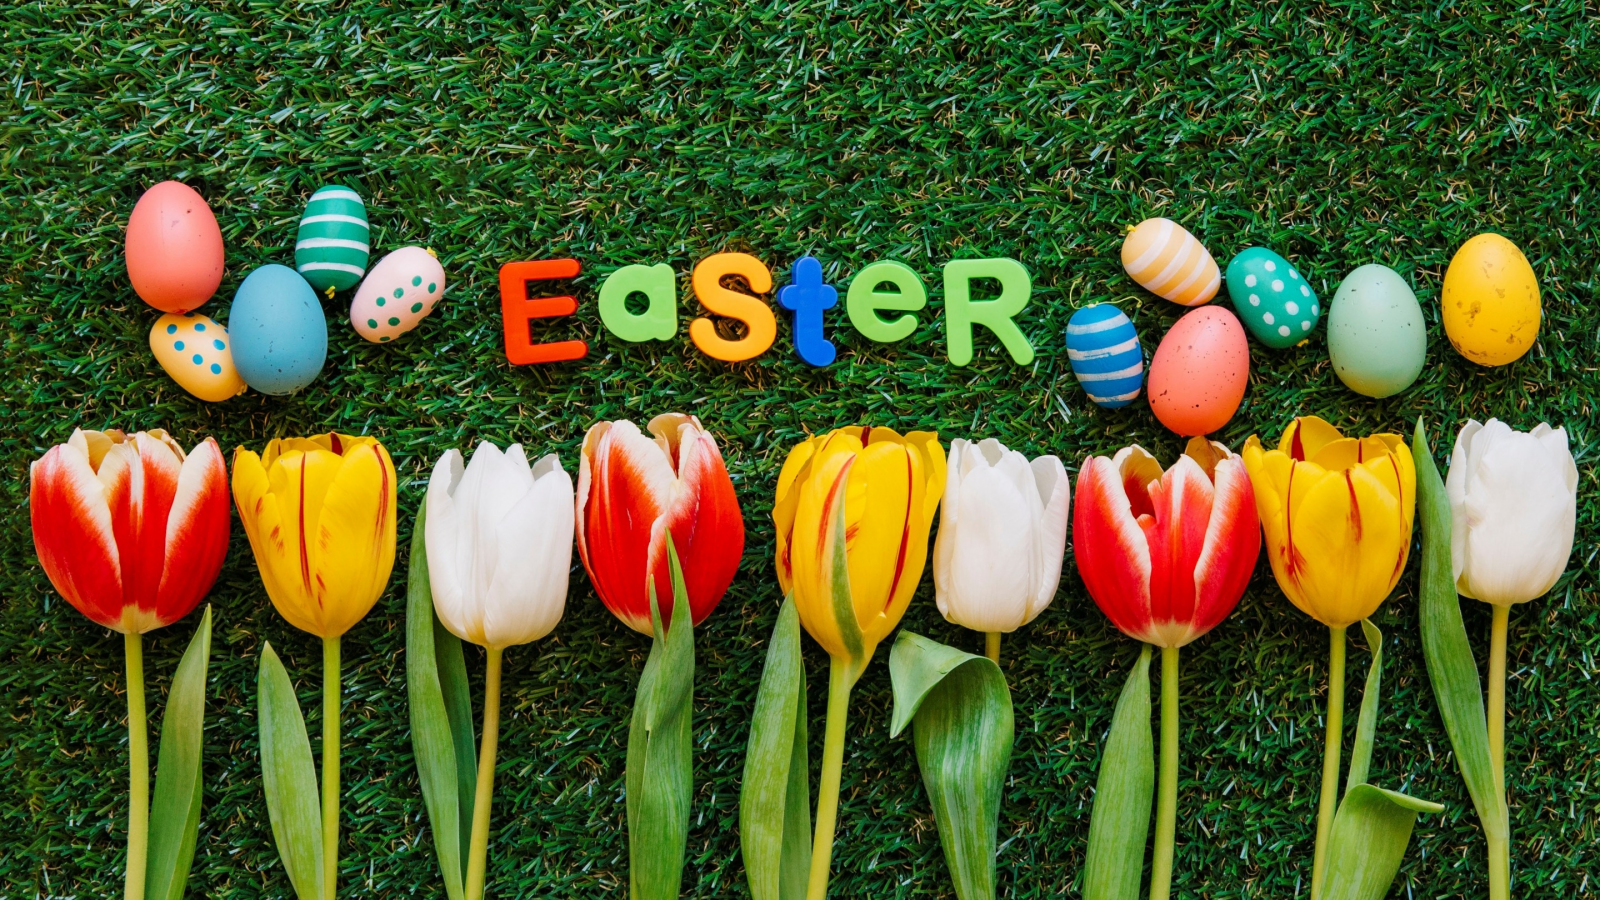 весна, трава, green grass, decoration, colorful, aster, асха, тюльпаны, tulips, spring, яйца крашеные, eggs, appy, flowers, цветы